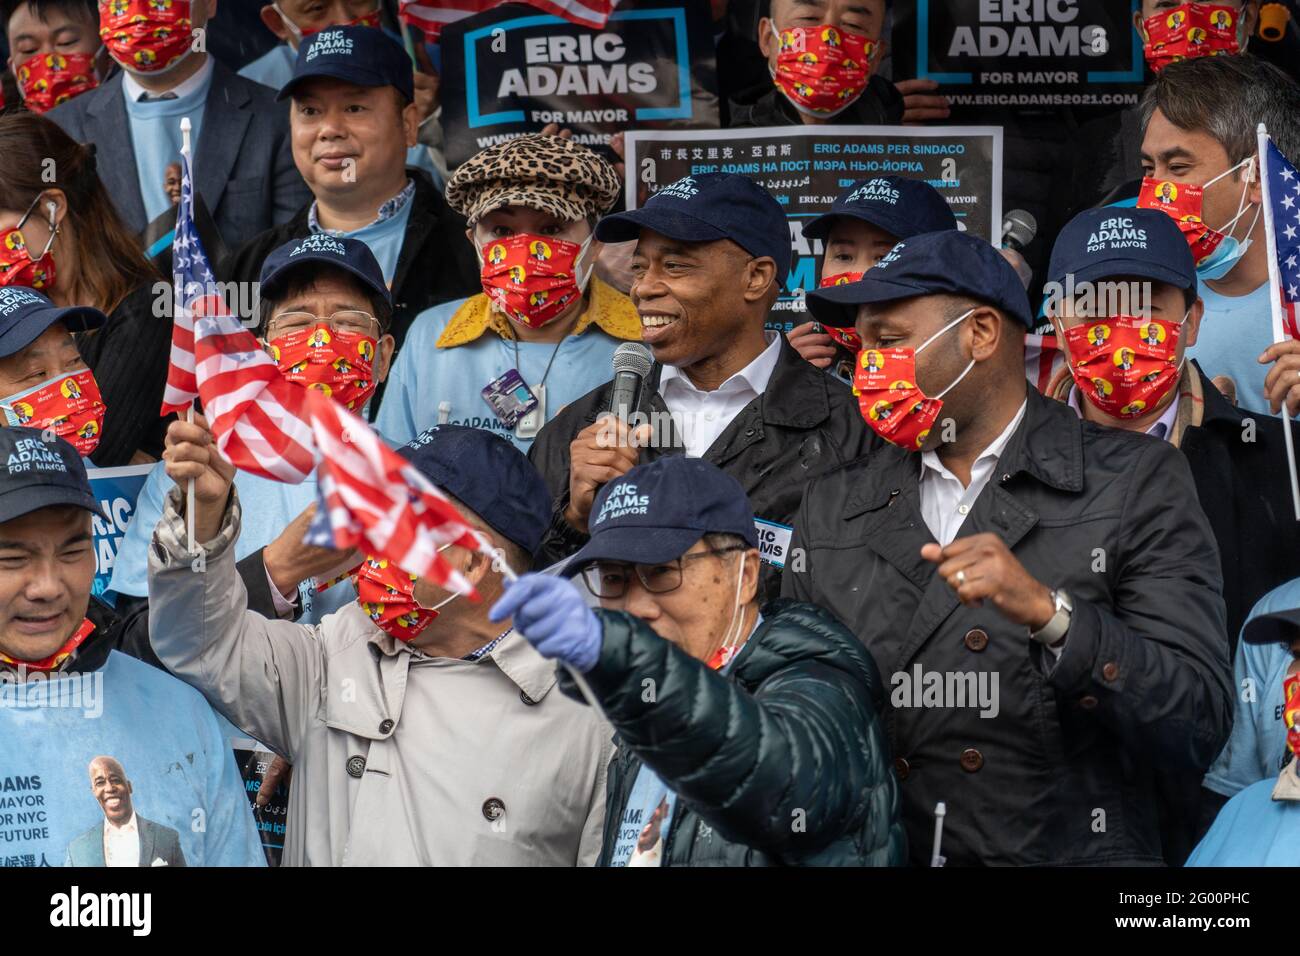 NUEVA YORK, NY – 30 DE MAYO: El candidato del alcalde de la ciudad de Nueva York, Eric Adams, habla en un mitin celebrado en Flushing, Queens por Amigo de los Chinos Americanos el 30 de mayo de 2021 en la ciudad de Nueva York. El candidato a la alcaldía de la ciudad de Nueva York y el presidente del distrito de Brooklyn, Eric Adams, hablando con neoyorquinos asiáticos-americanos, declararon sus profundos vínculos con la comunidad y se comprometieron a detener la violencia antiasiática si se elige para dirigir el ayuntamiento. Crédito: Ron Adar/Alamy Live News Foto de stock